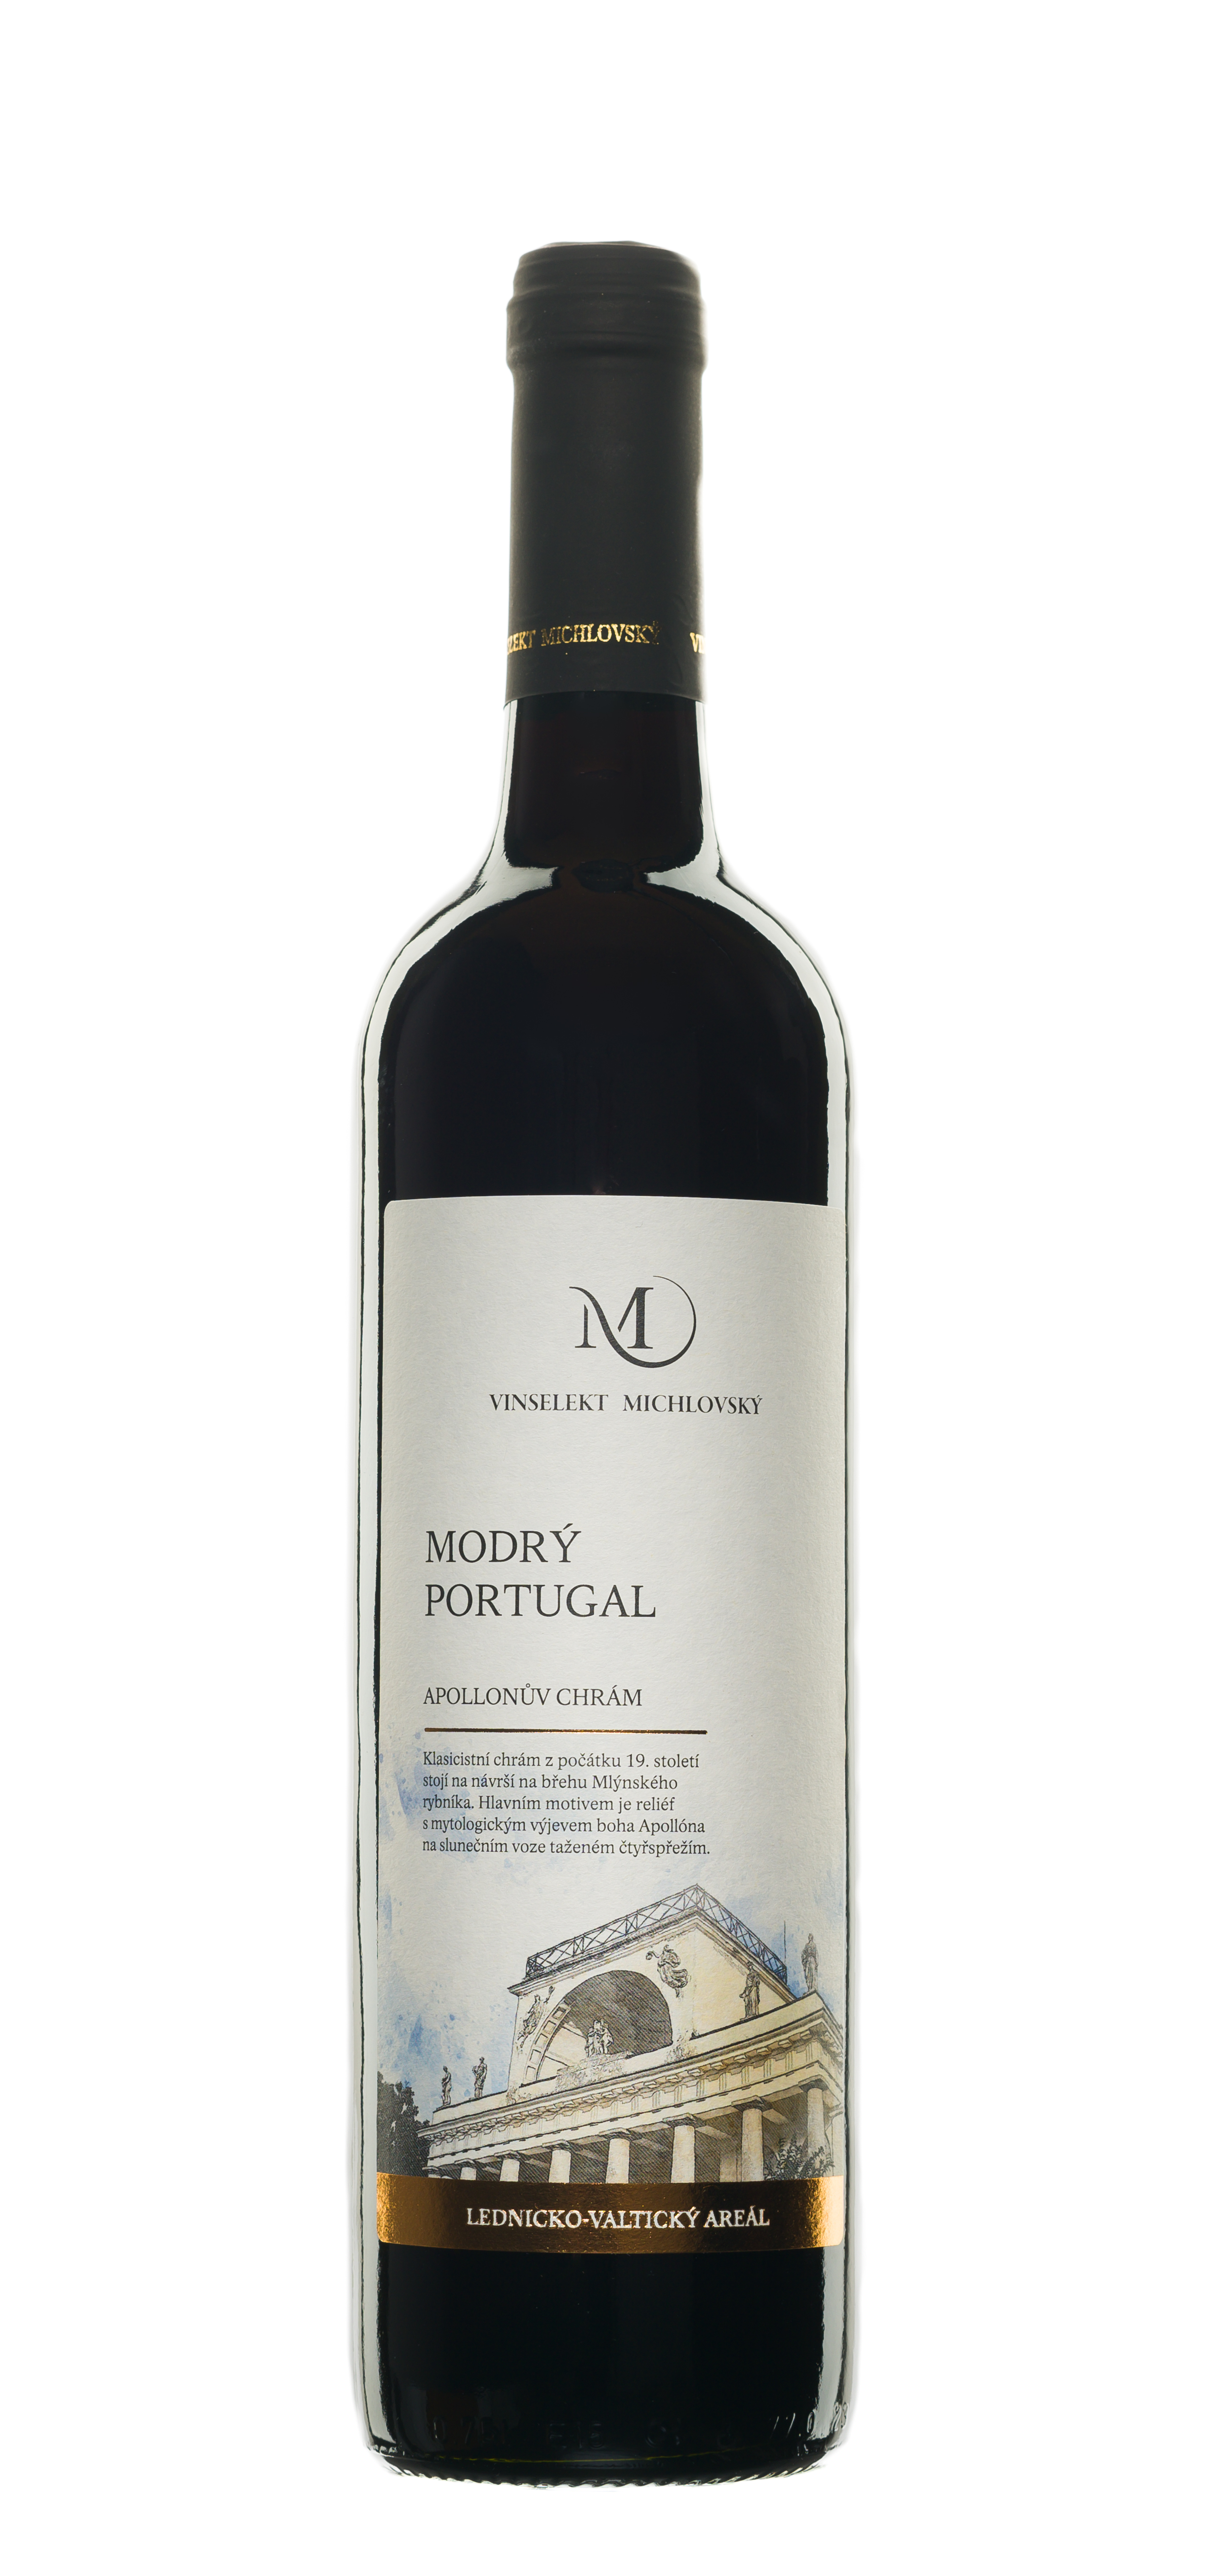 Modrý portugal 2017 kabinetní víno